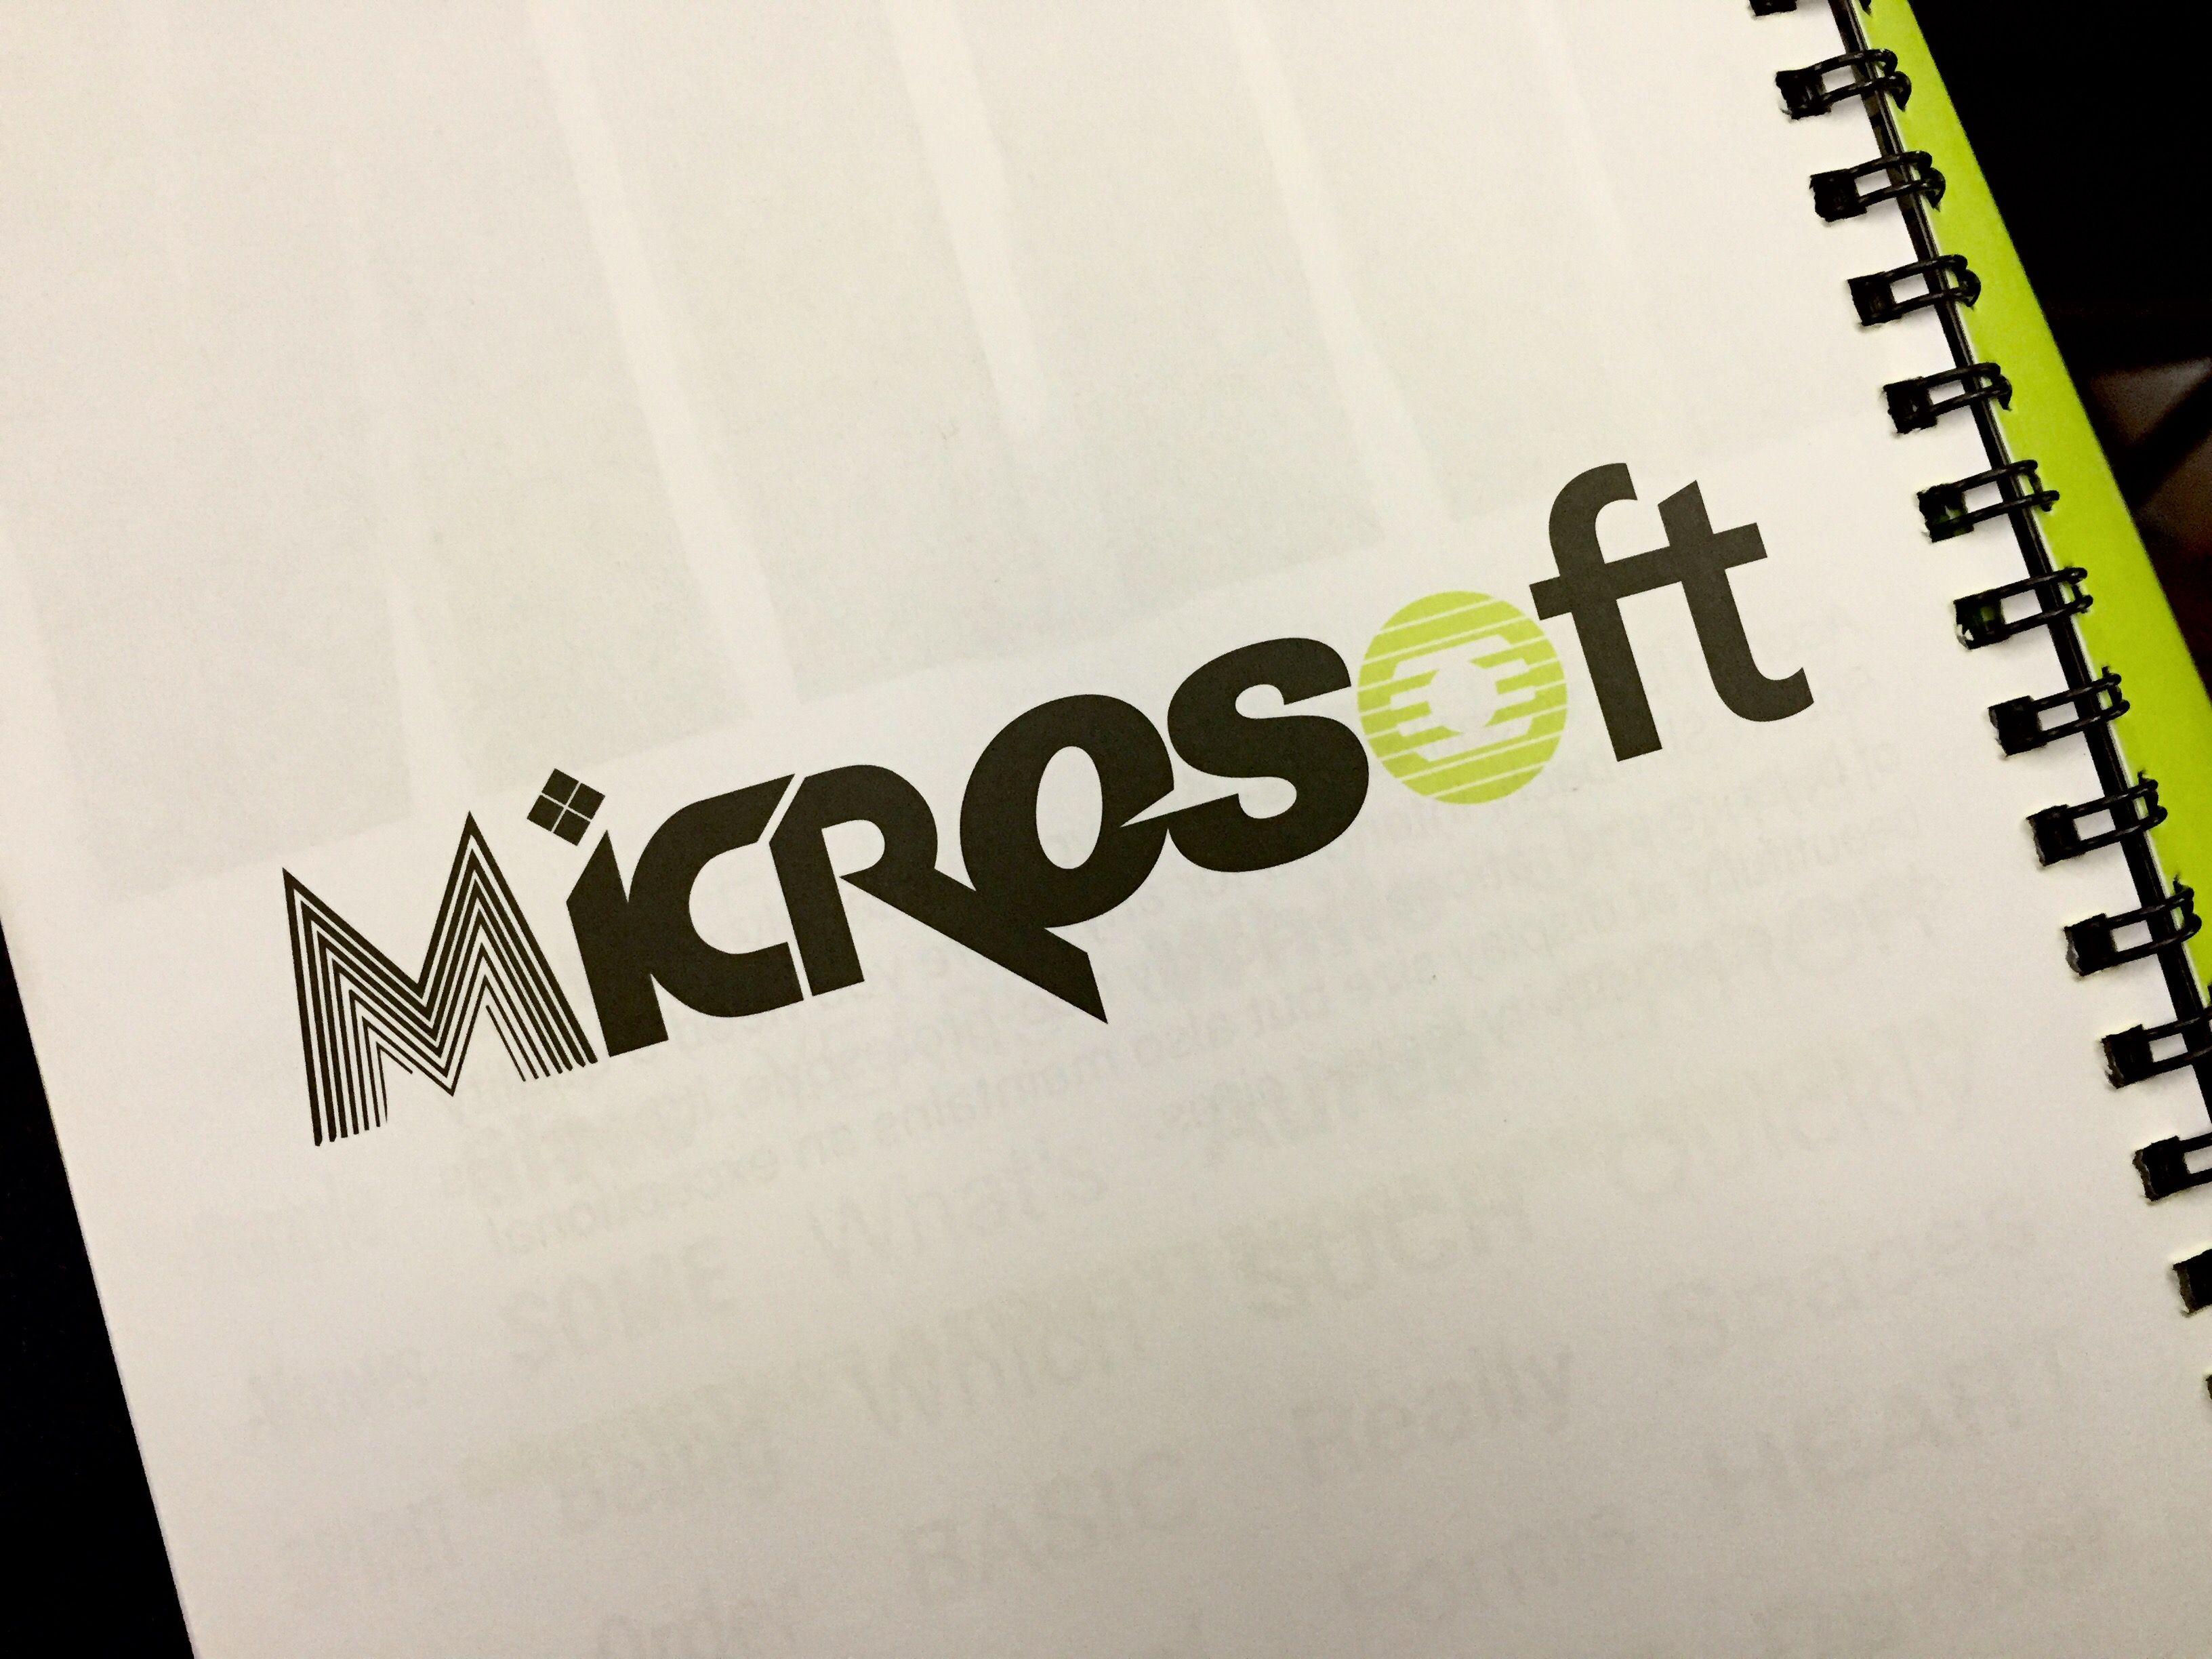 Microsoft Media Logo - Microsoft logo mashup (ad in ATypI 2015 program) - Fonts In Use